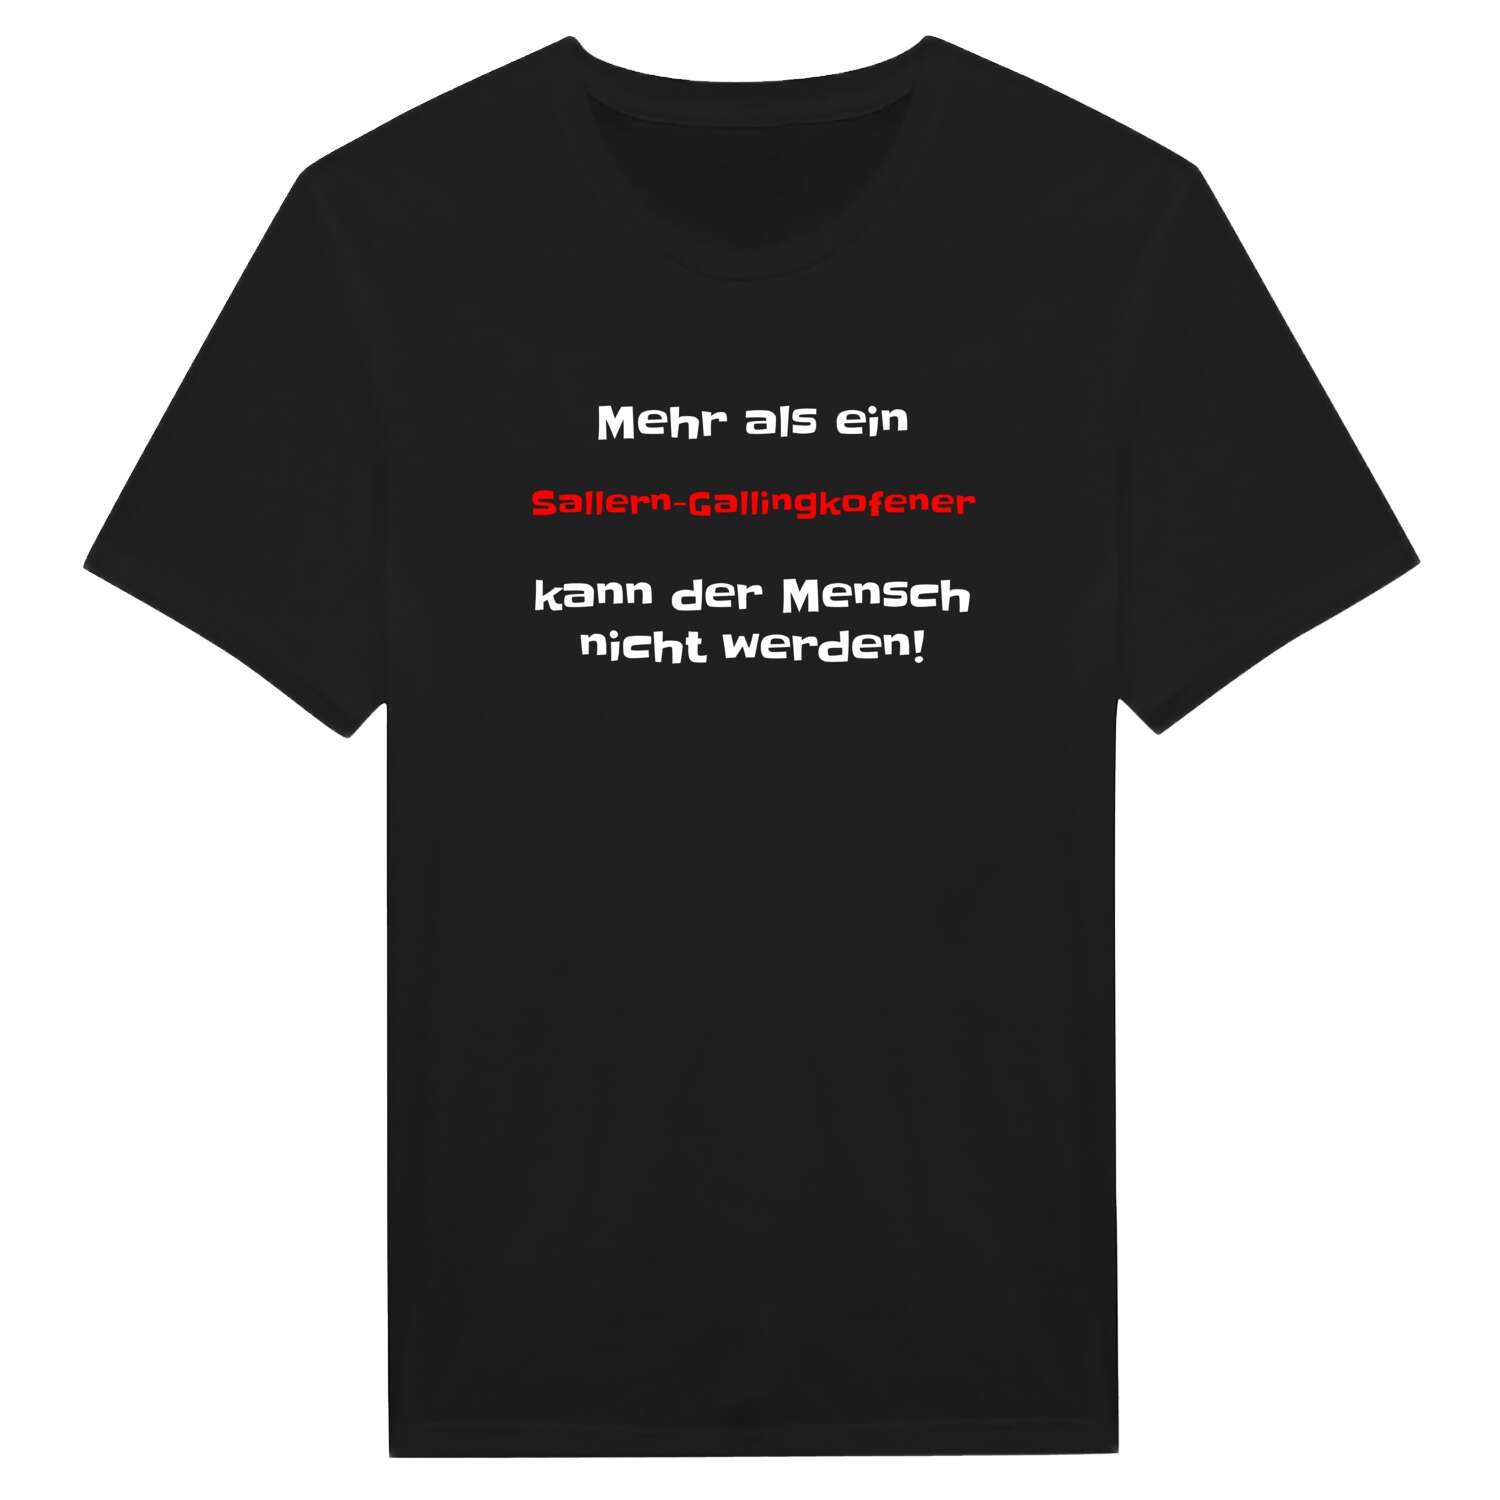 Sallern-Gallingkofen T-Shirt »Mehr als ein«